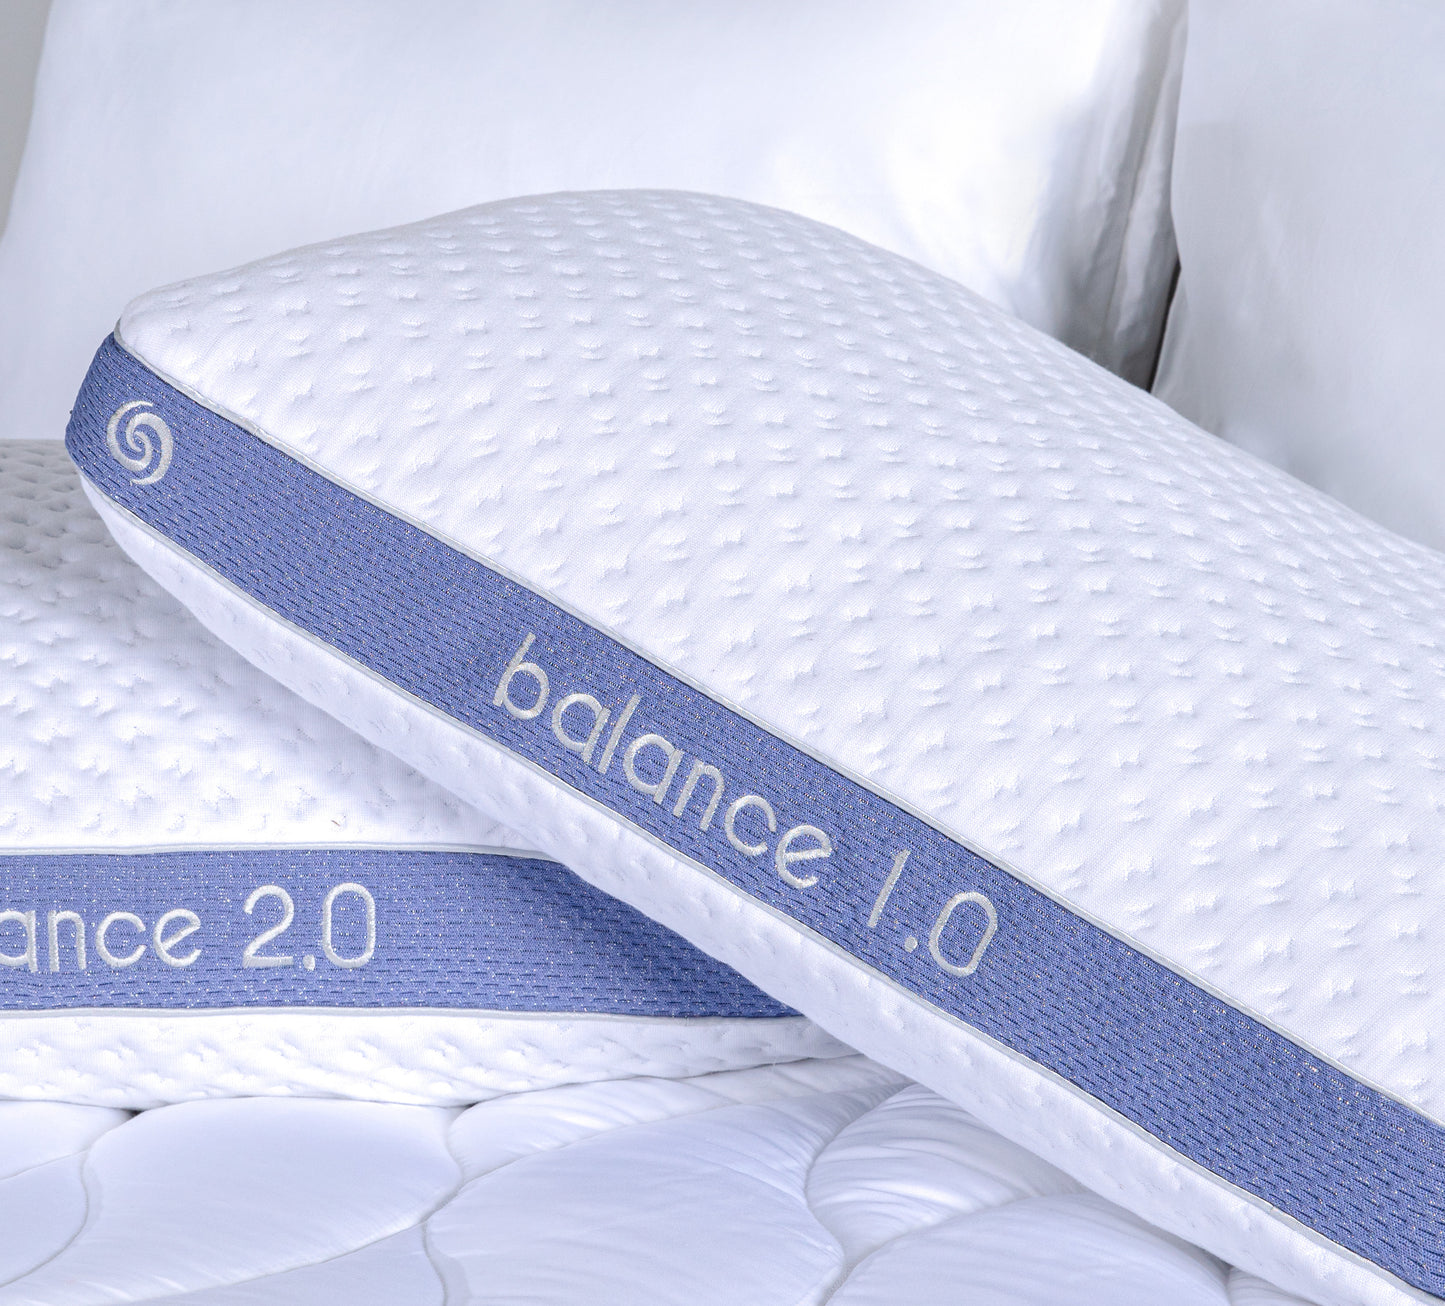 BedGear Balance II 1.0 Pillow